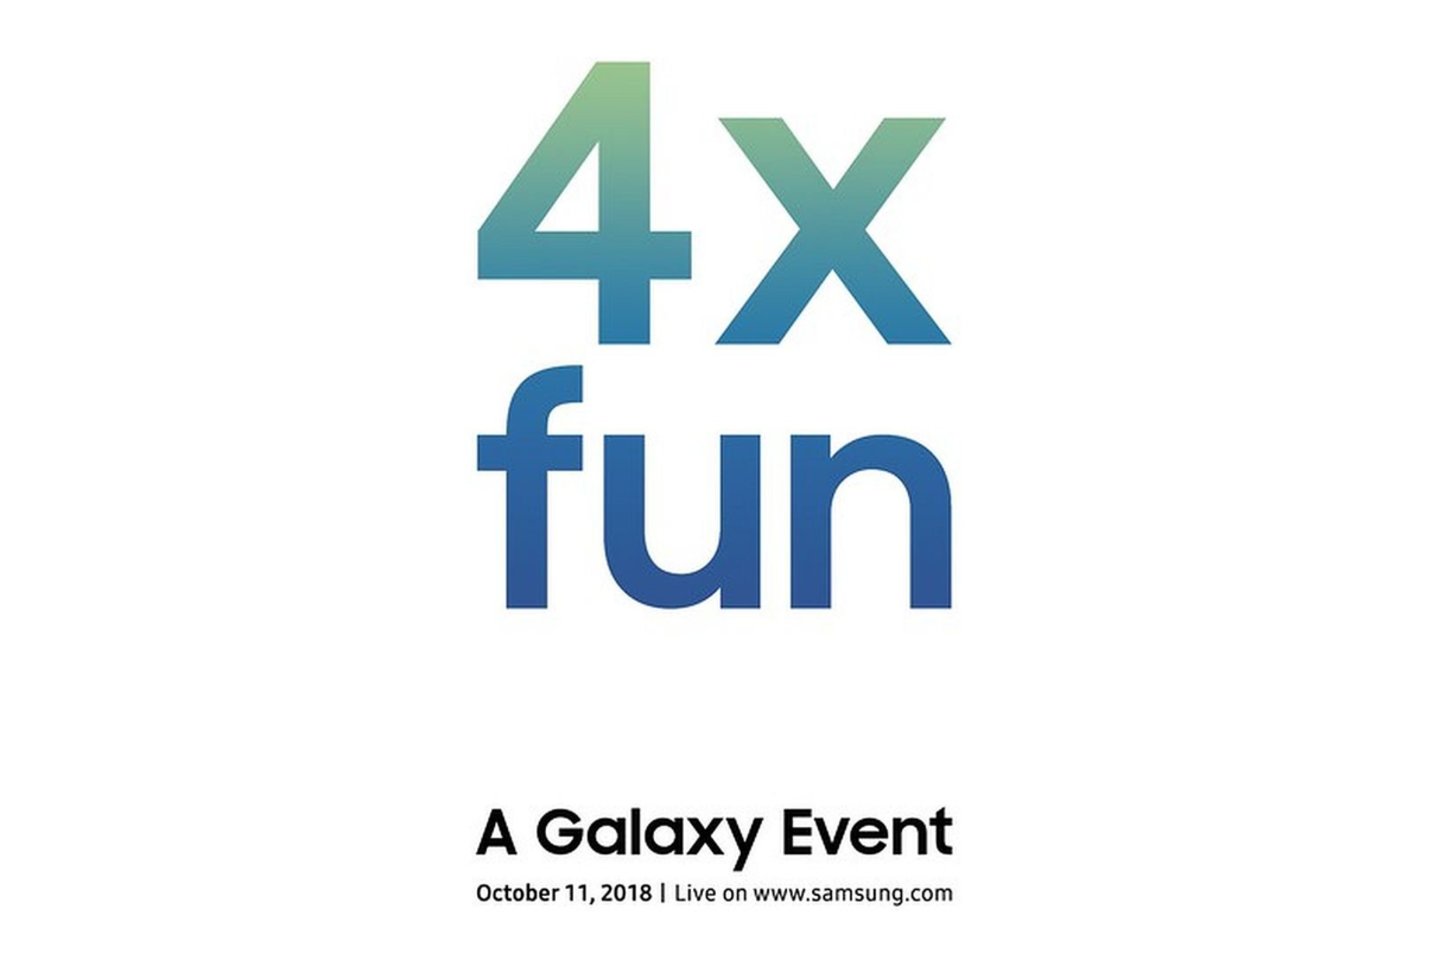  Kompanija “Samsung” išsiuntinėjo žurnalistams kvietimus į renginį spalio 11d. Mėtomasi užuominomis apie naują įrenginį ir paslaptinga žinute „4X smagiau” (angl. 4X fun).